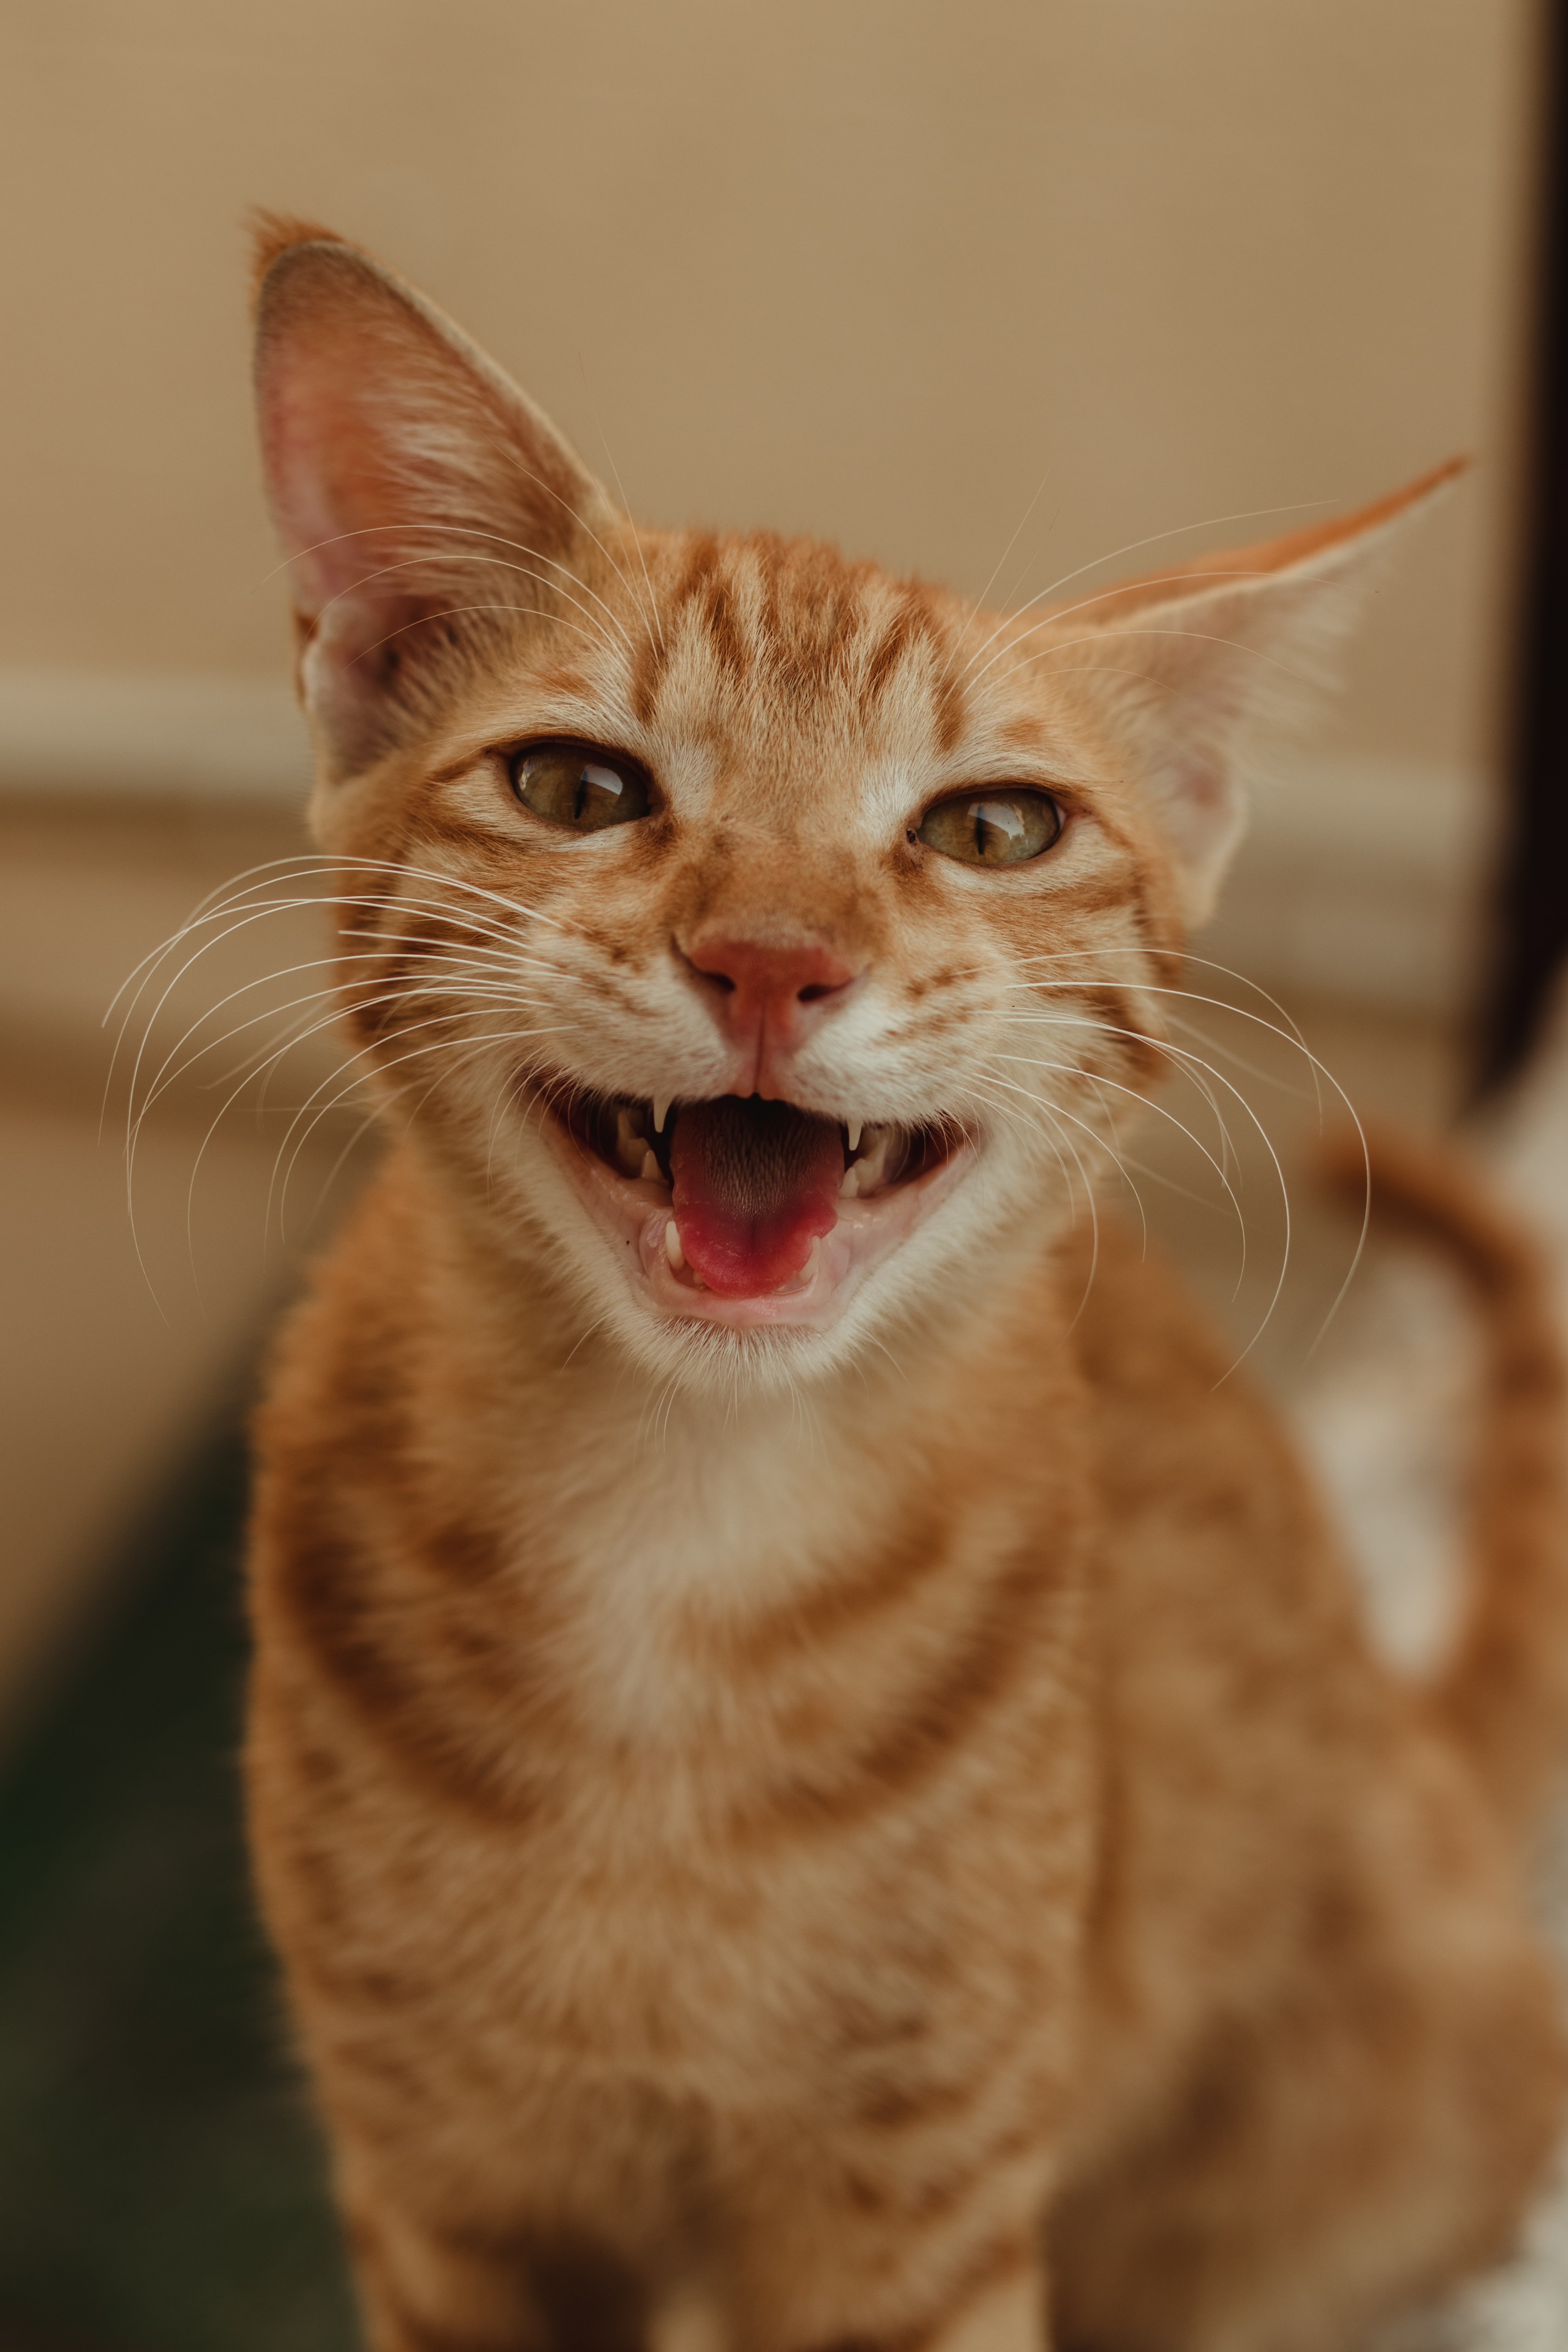 An orange cat smiling